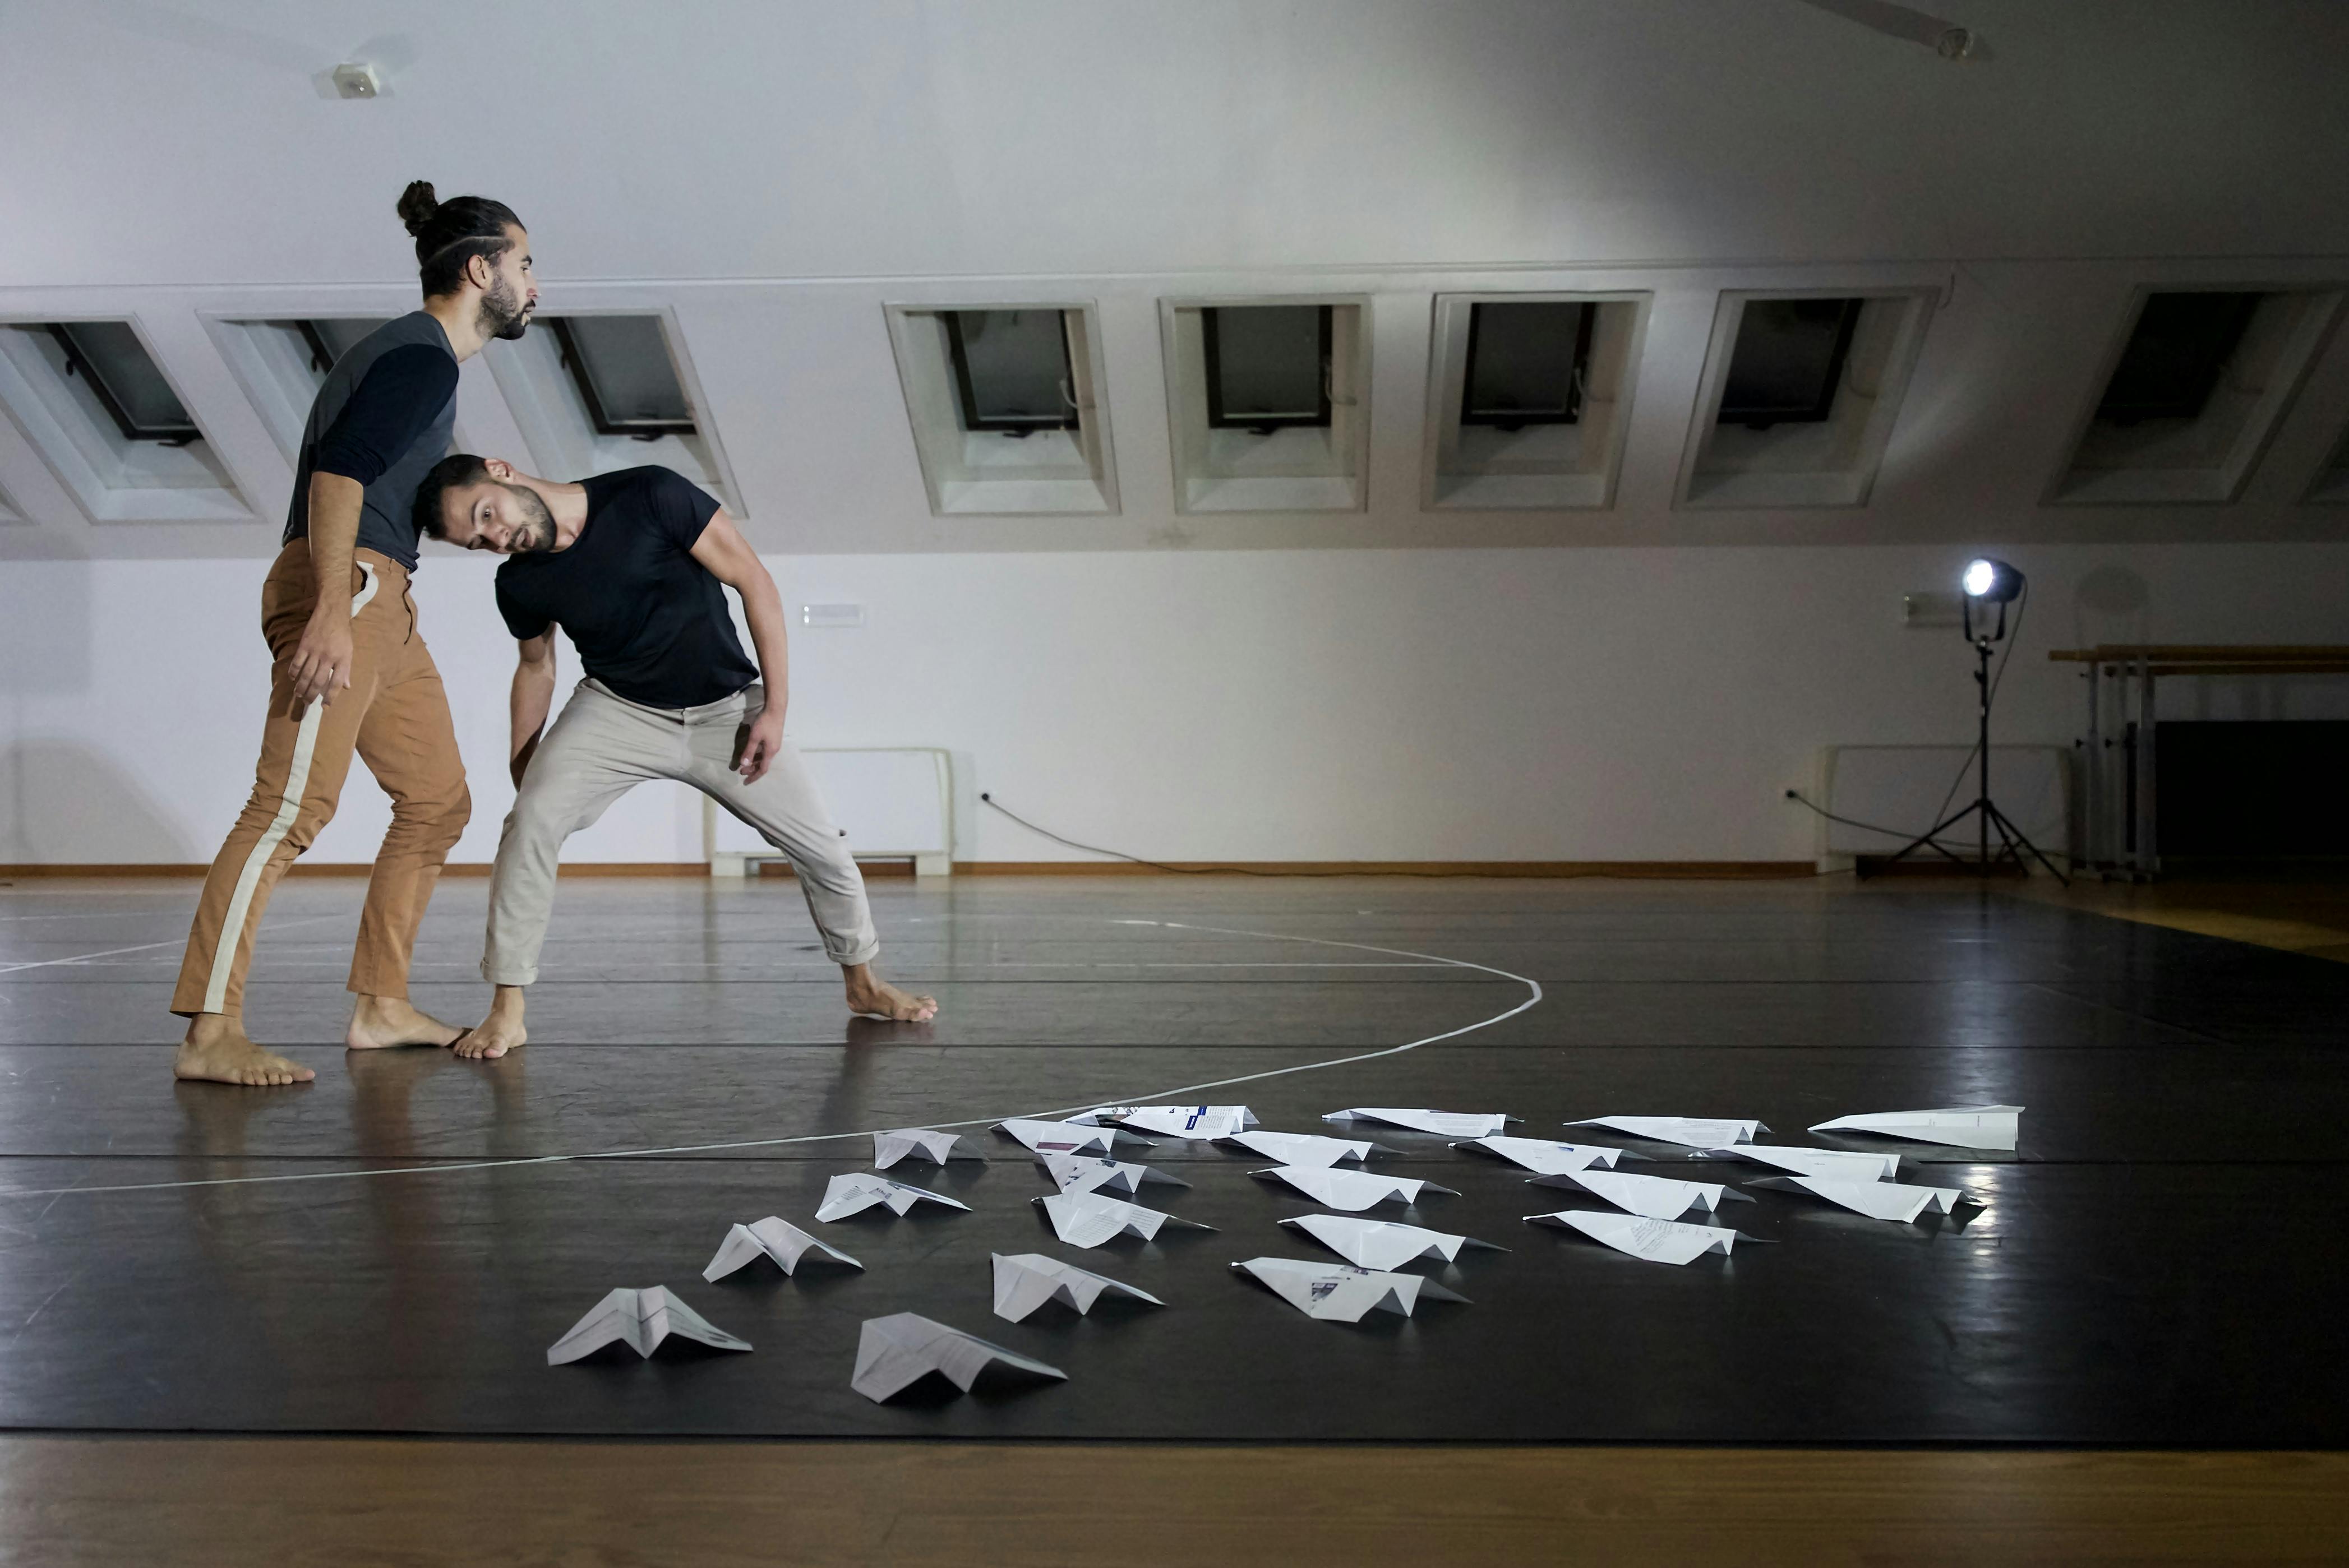 I due coreografi e danzatori provano in sala: uno dei due appoggia il proprio peso sulla testa dell'altro, piegato per sostenerlo. Per terra ci sono numerosi areoplanini di carta disposti a triangolo. 